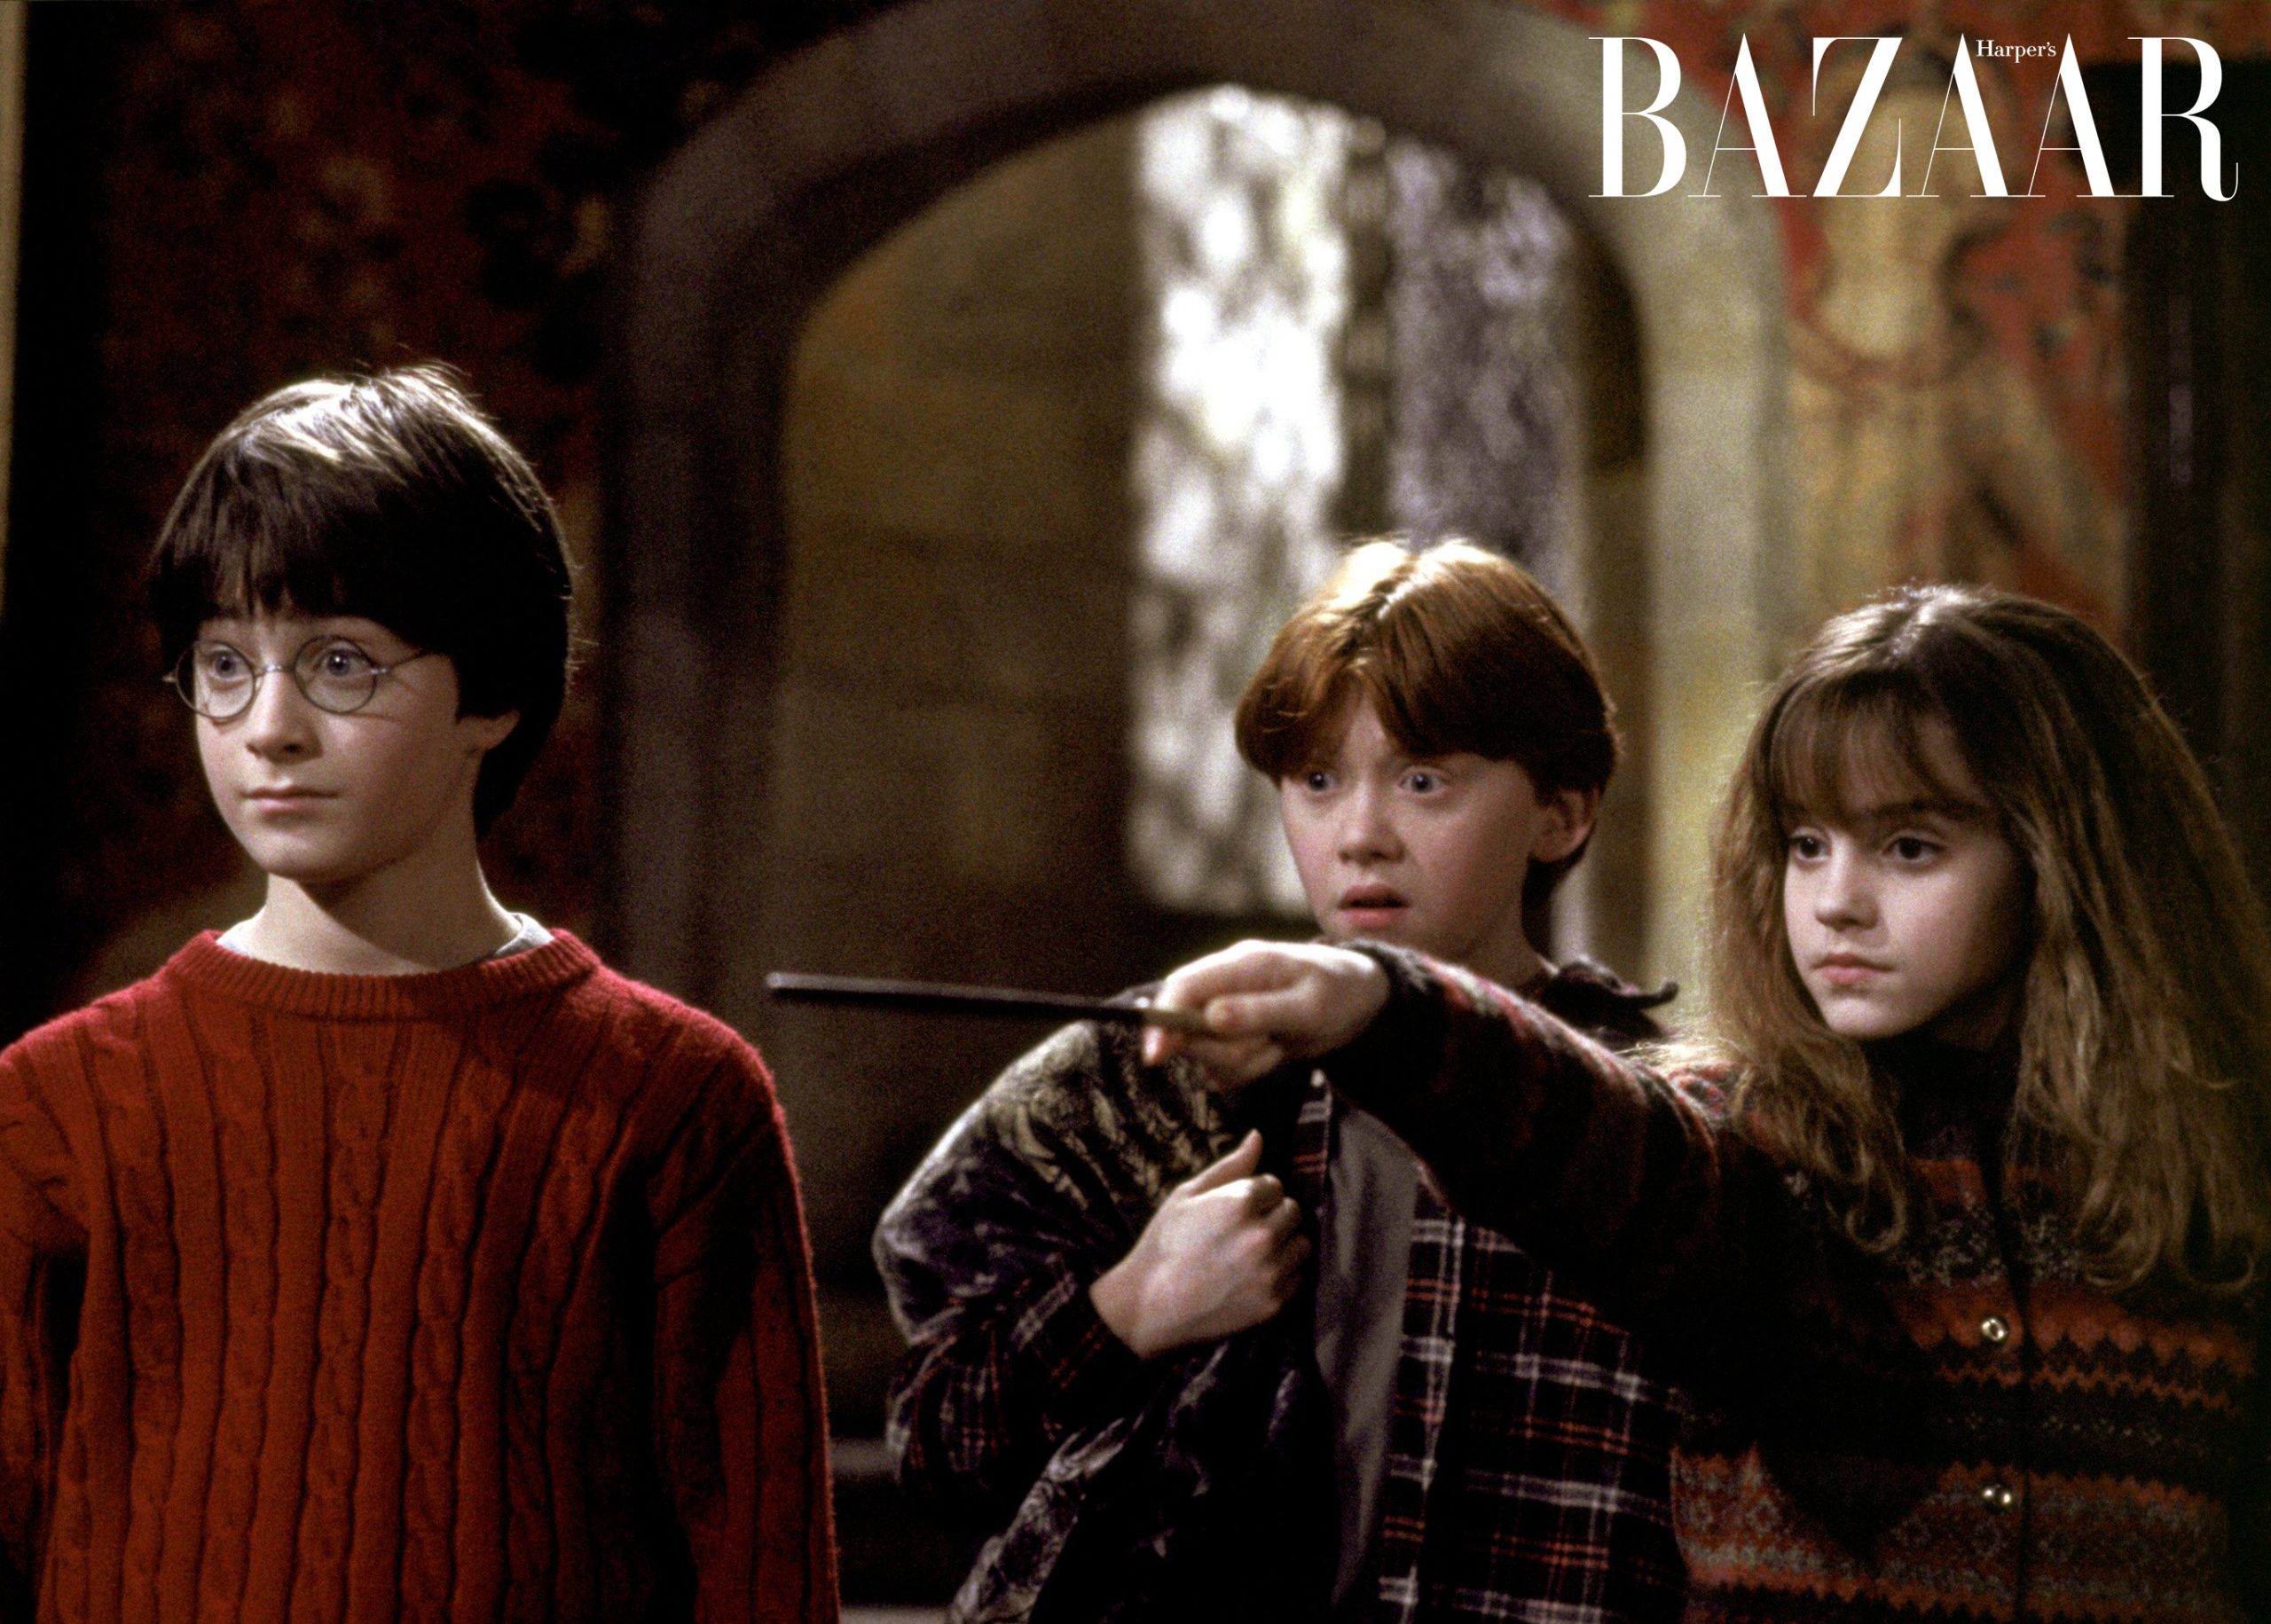 Harper's Bazaar_Harry Potter_01